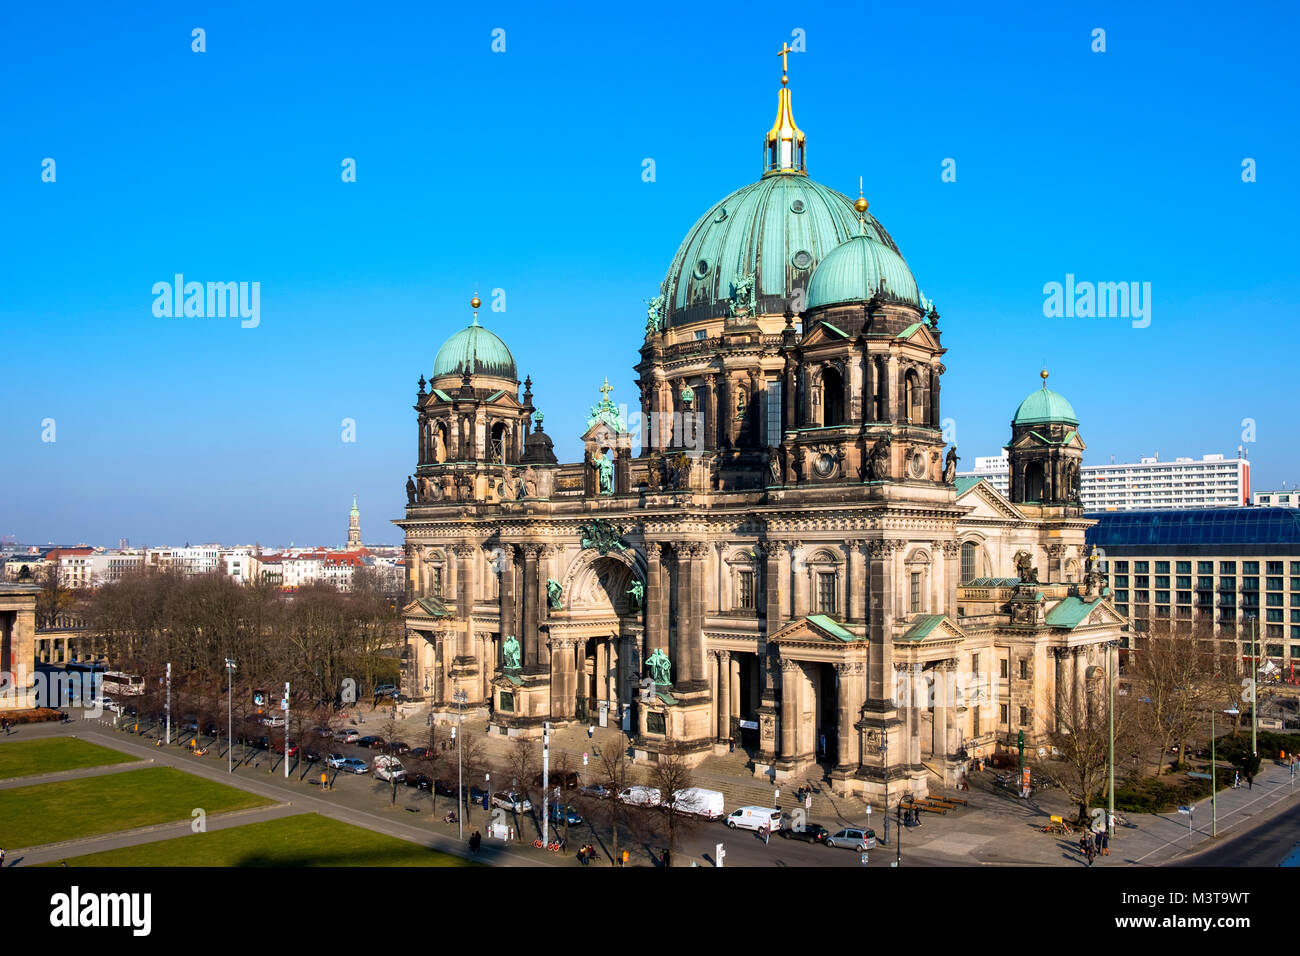 Vue sur la cathédrale de Berlin, Berliner Dom, sur l'île de musée sur Lustgarten (Museumsinsel) à Mitte, Berlin, Allemagne Banque D'Images